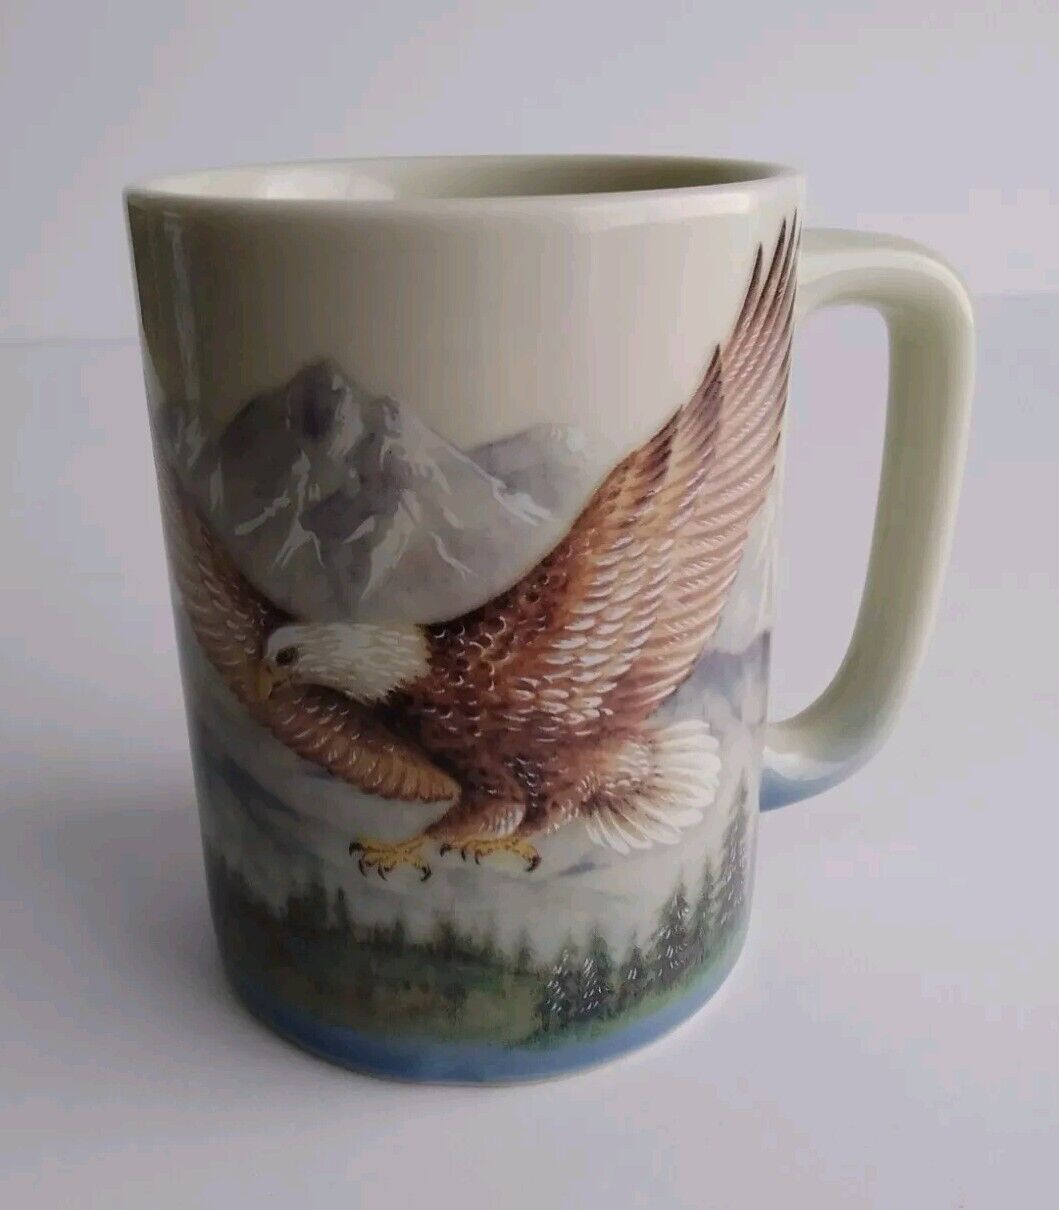 Otagiri Coffee Cup Mug Bald Eagle Flying Ceramic Japan 8 Oz.